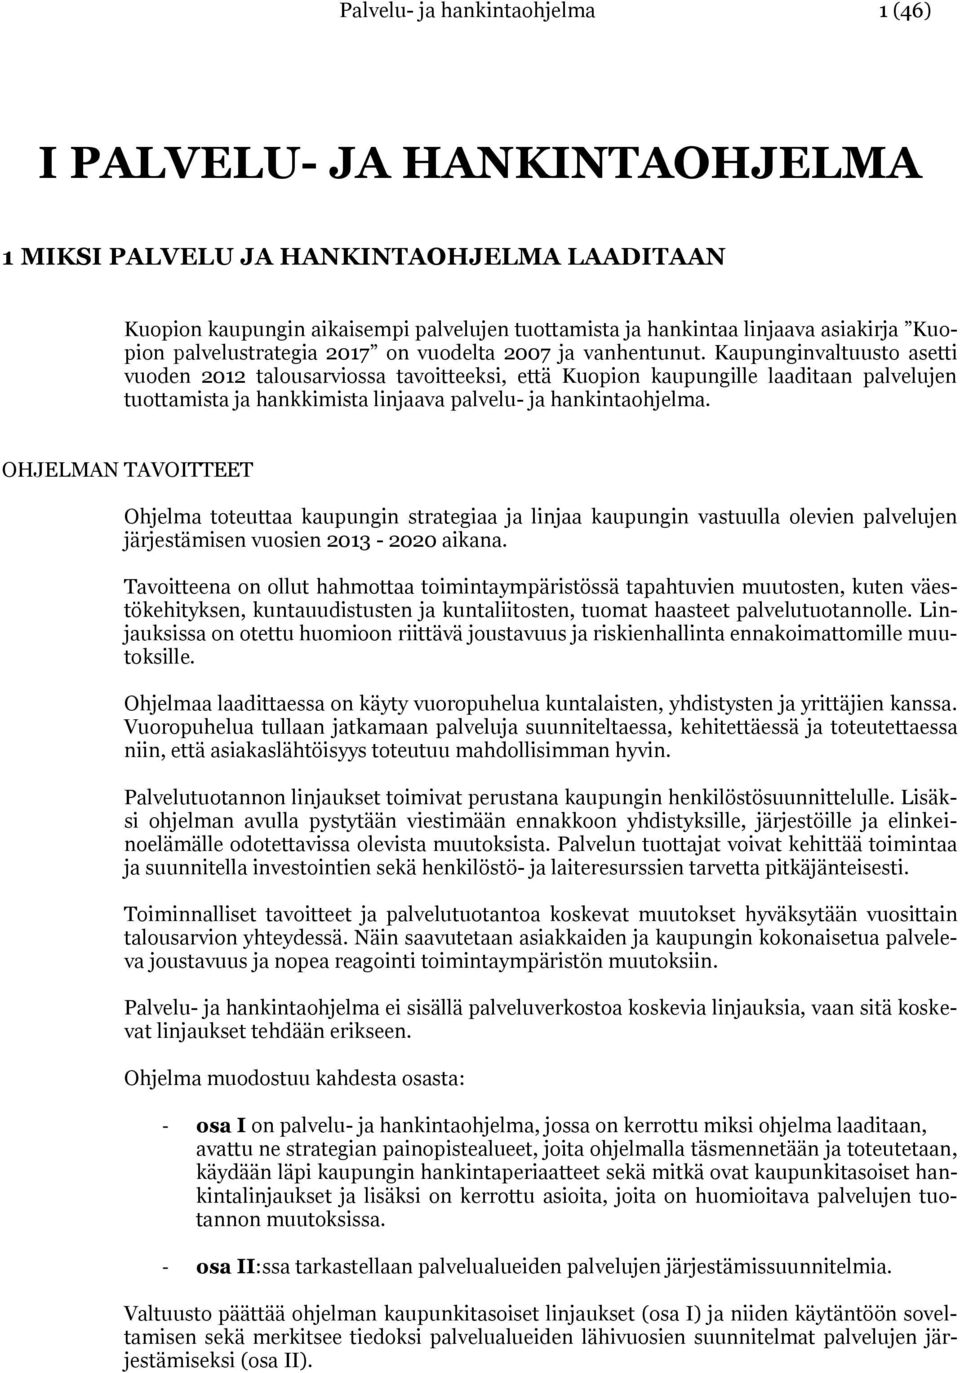 Kaupunginvaltuusto asetti vuoden 2012 talousarviossa tavoitteeksi, että Kuopion kaupungille laaditaan palvelujen tuottamista ja hankkimista linjaava palvelu- ja hankintaohjelma.